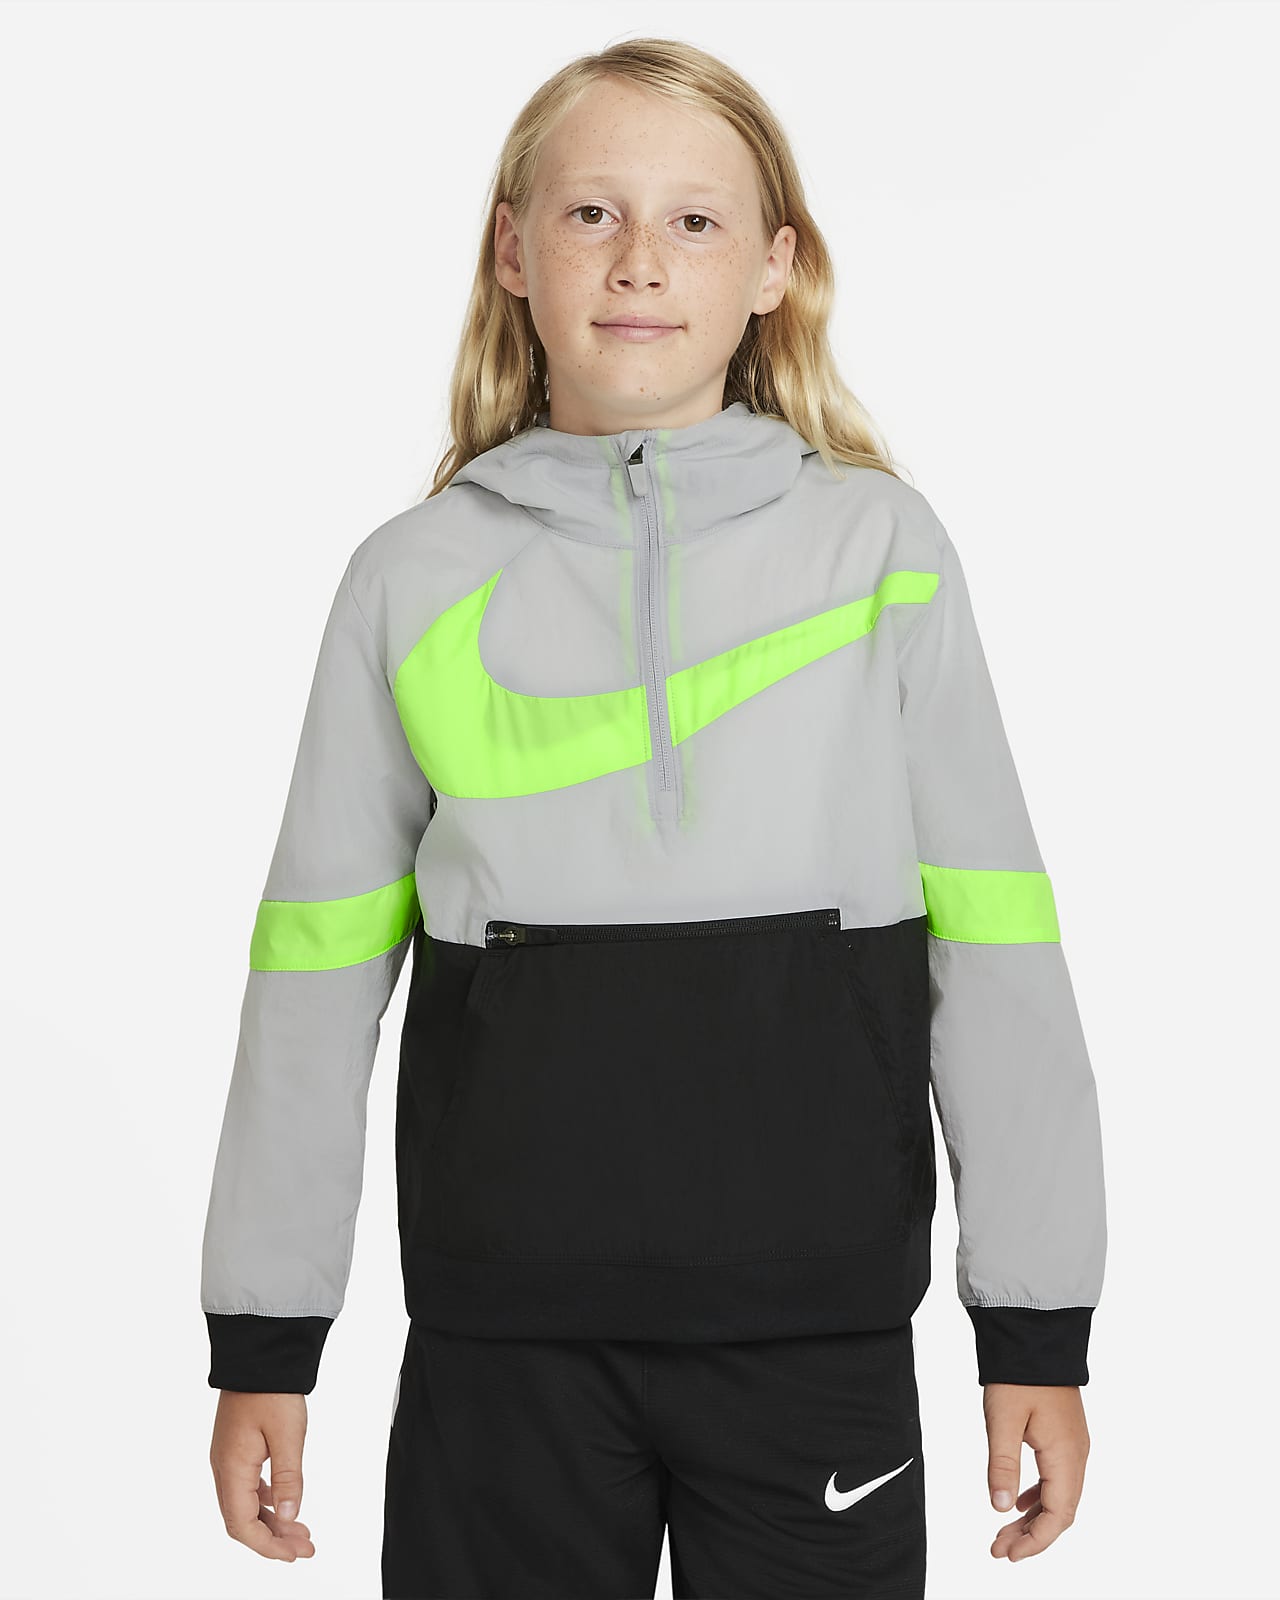 Kurtka do koszykówki dla dużych dzieci (chłopców) Nike Crossover